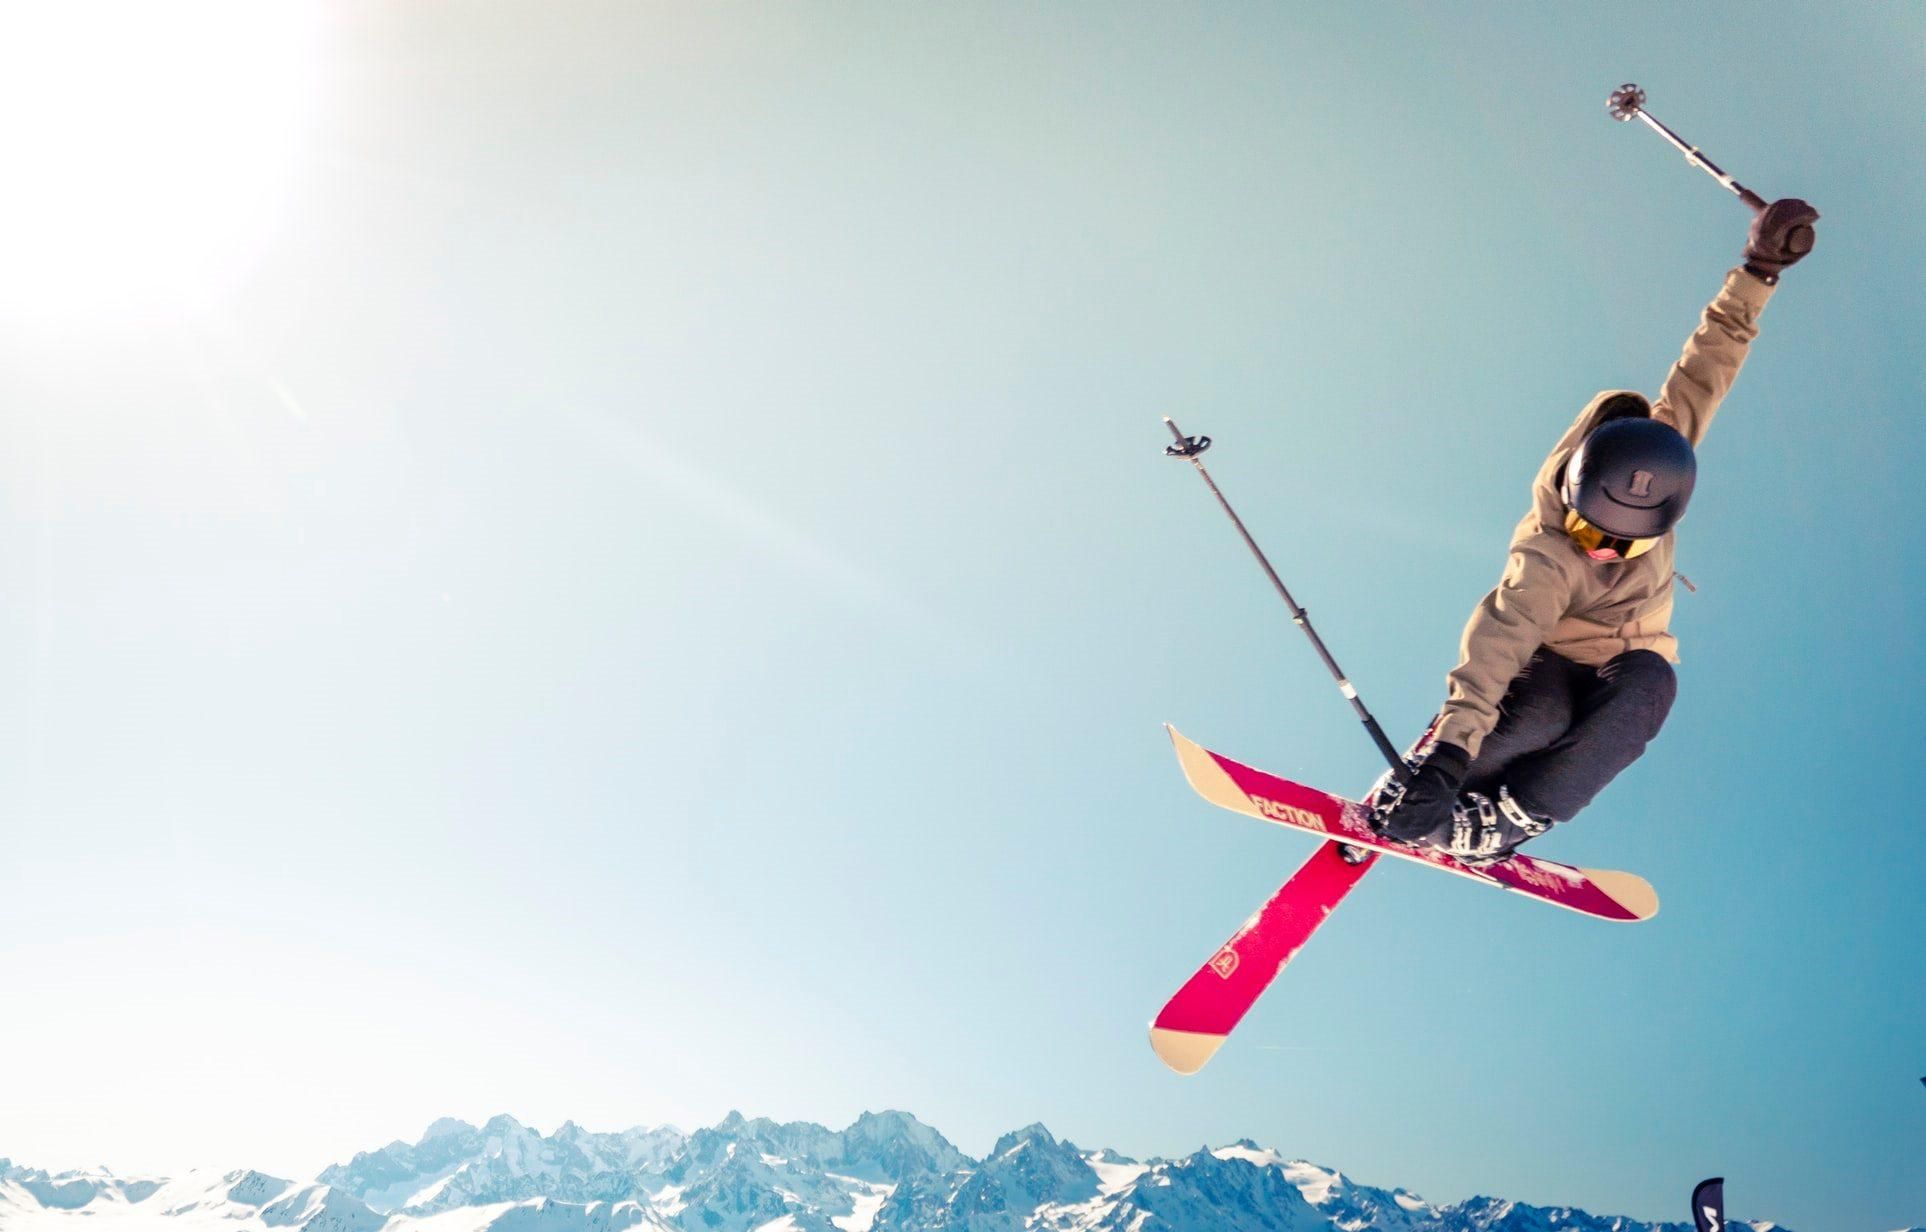 Как сделать великолепные фото во время катания на лыжах или борде: 6 действенных советов - Отпуск